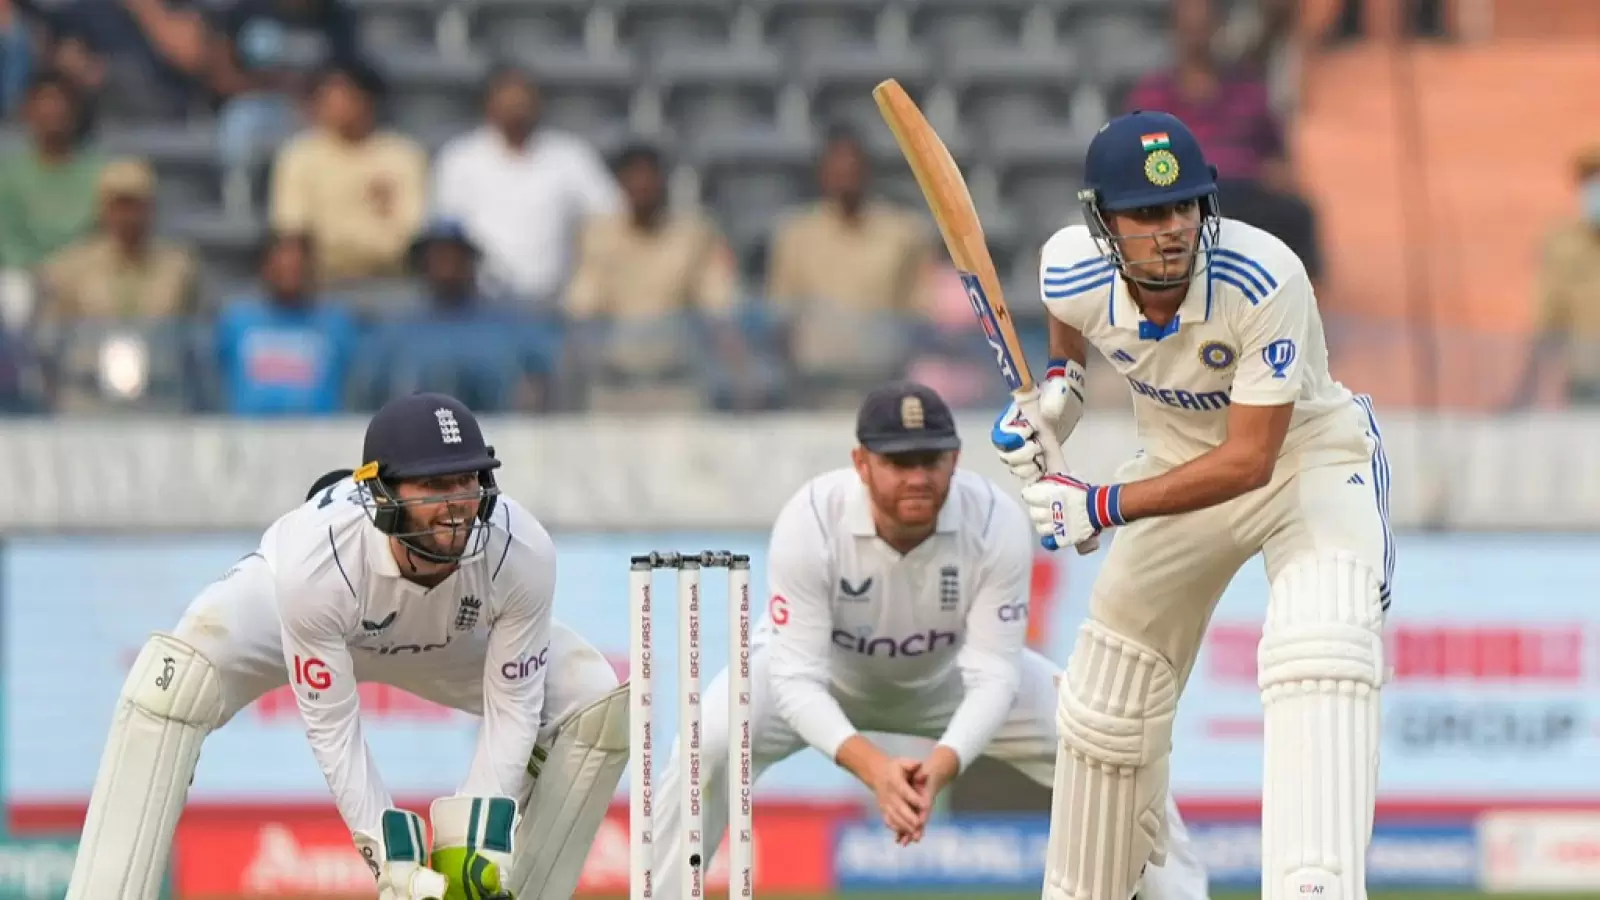 IND vs ENG 2nd Test : 11 महीने बाद शुभमन गिल ने टेस्ट में लगाया शतक, मैच के बाद बोले - 'यह काफी संतोषजनक..'